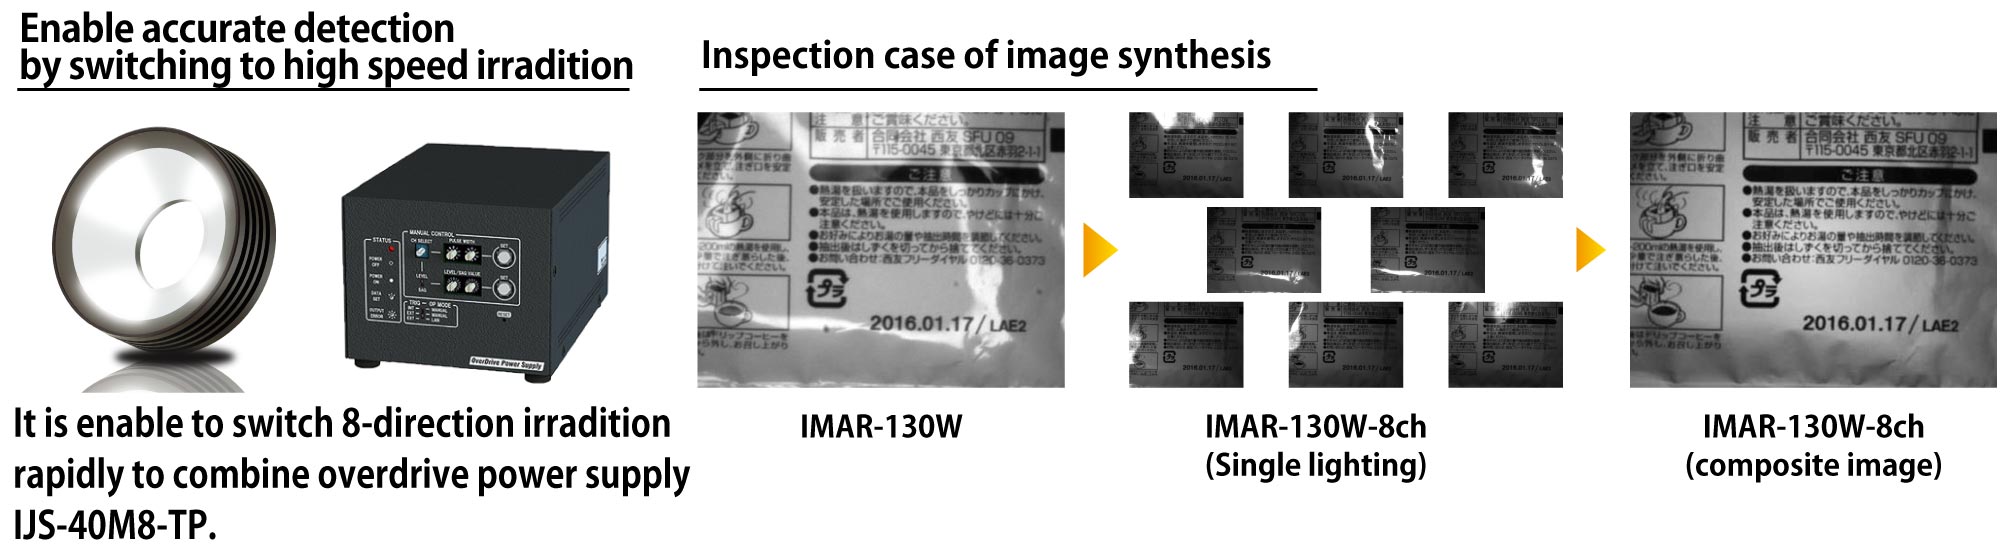 IMAR-8CH Product Description 04